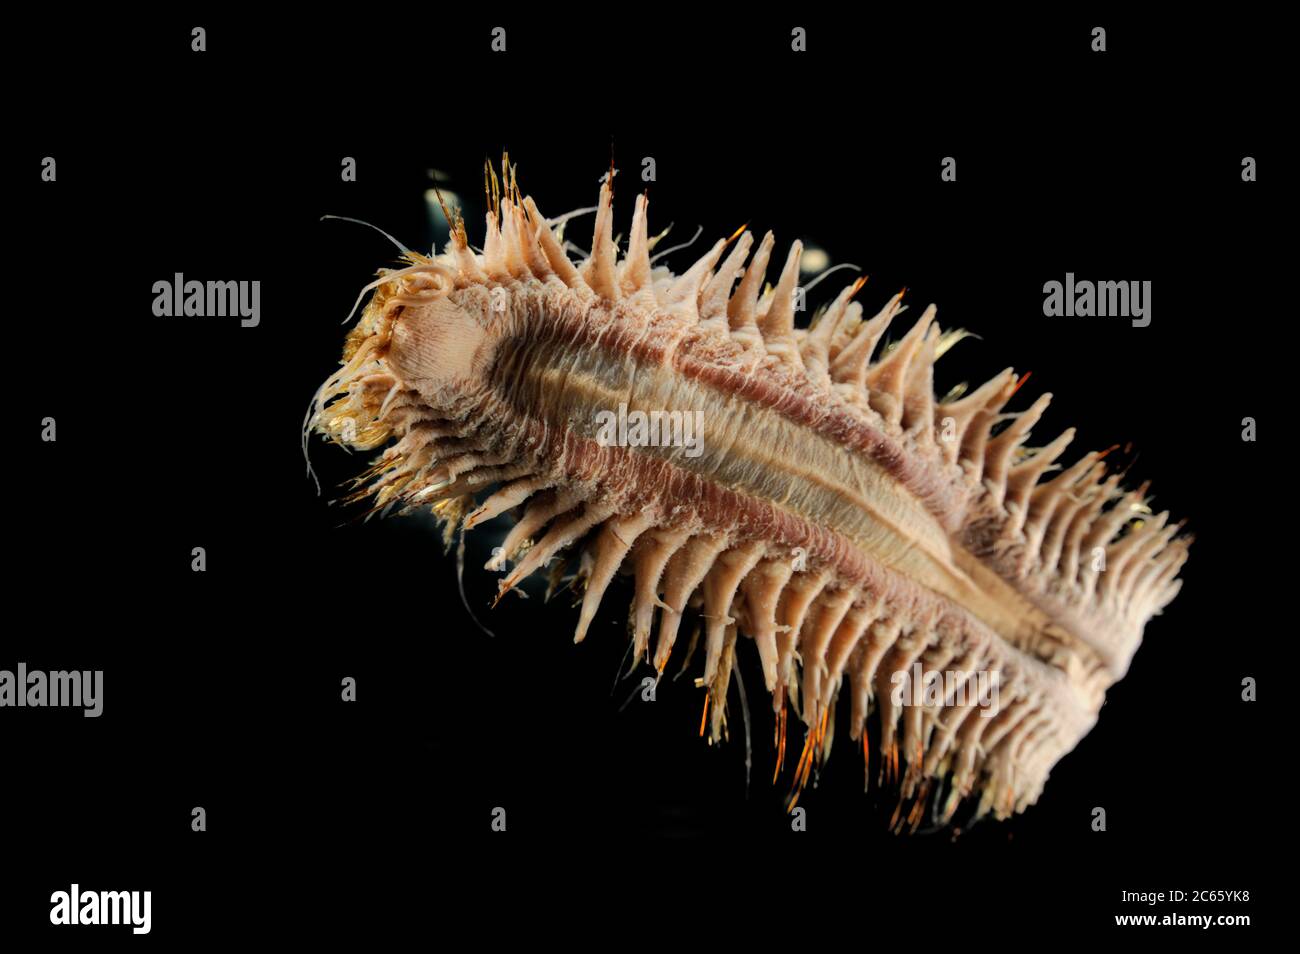 Riesenwürmer (Eulagisca gigantea) das Bild entstand in Kooperation mit dem Zoologischen Museum Universität Hamburg Stockfoto